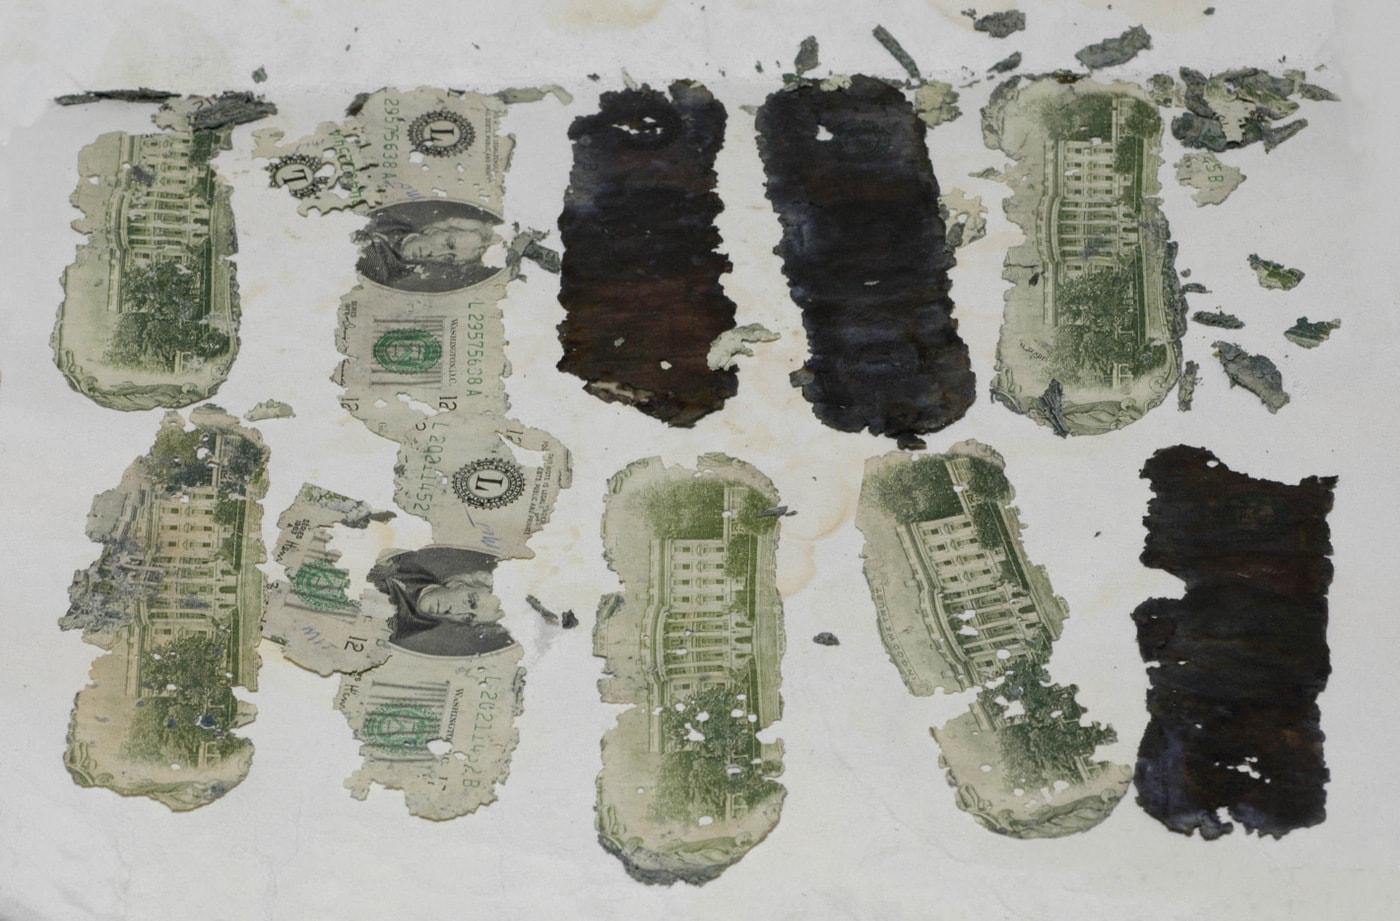 חלק מהכסף שדי. בי. קופר גנב נמצא על גדות נהר ב-1980 (צילום: FBI)